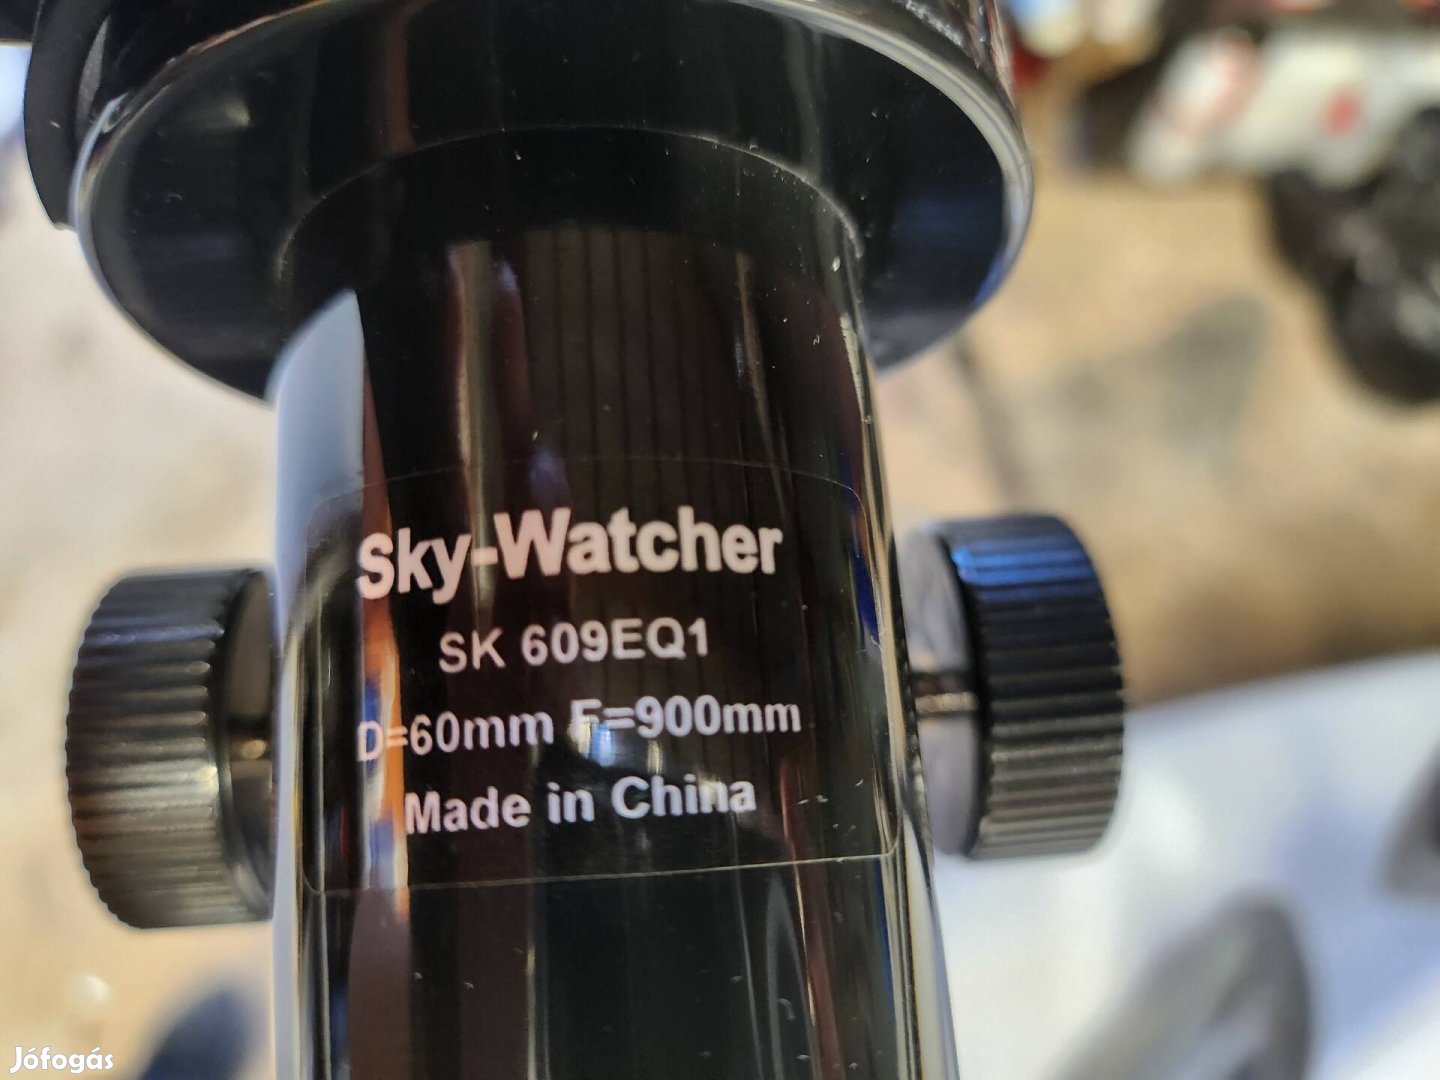 Sky-watcher refraktor.